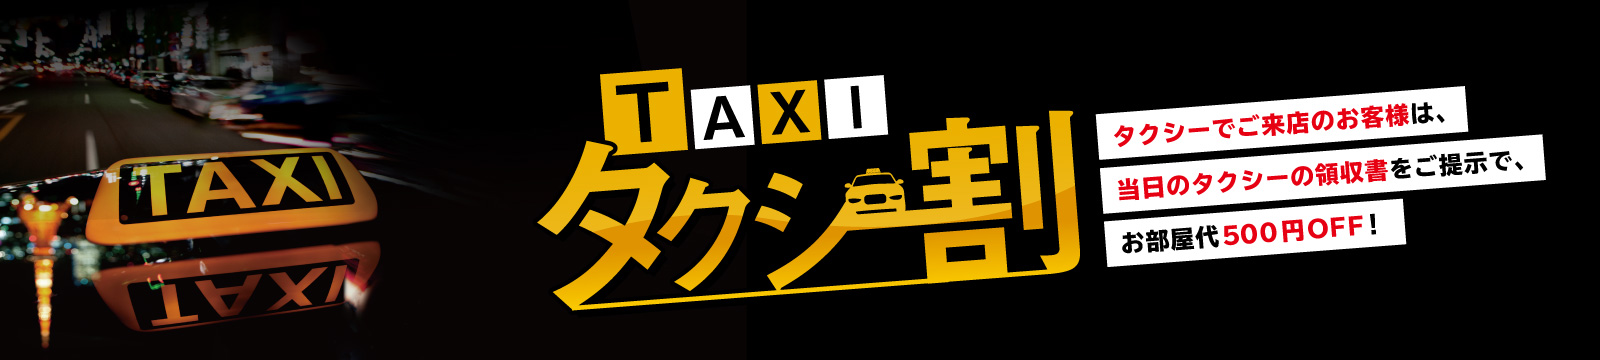 タクシー割